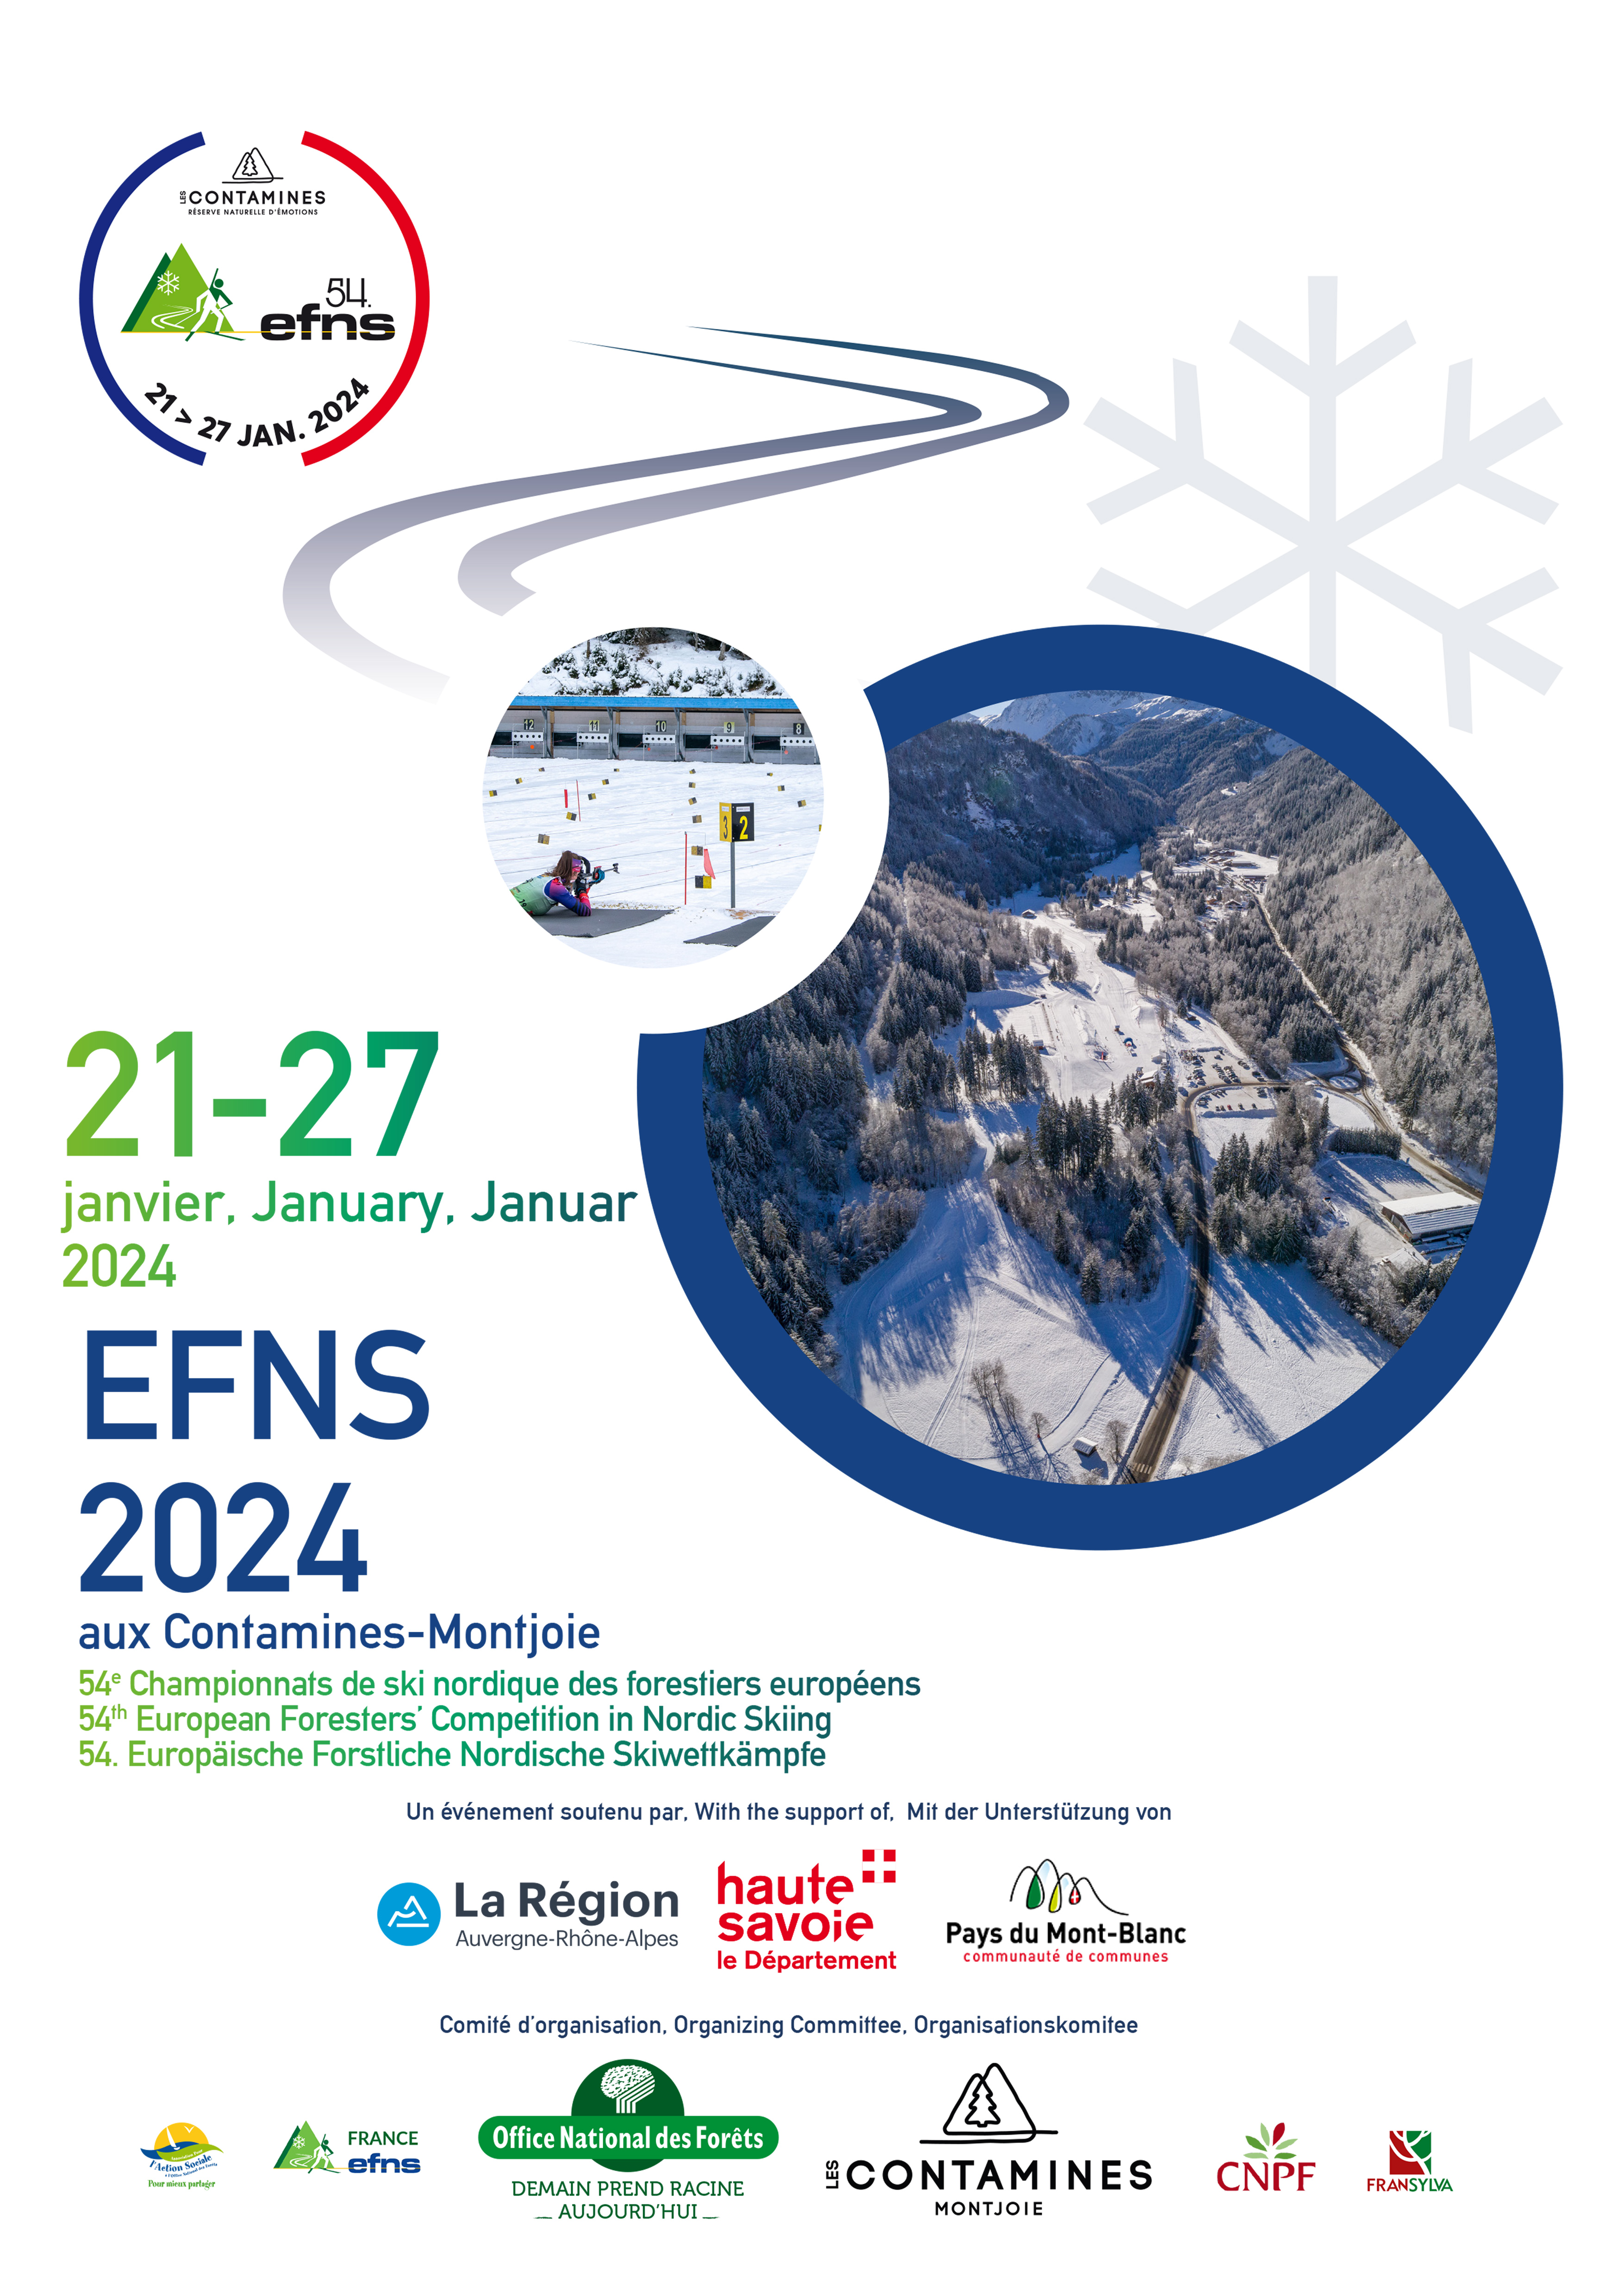 EFNS 2024 : Championnats de ski nordique des forestiers européens - Les  Contamines-Montjoie